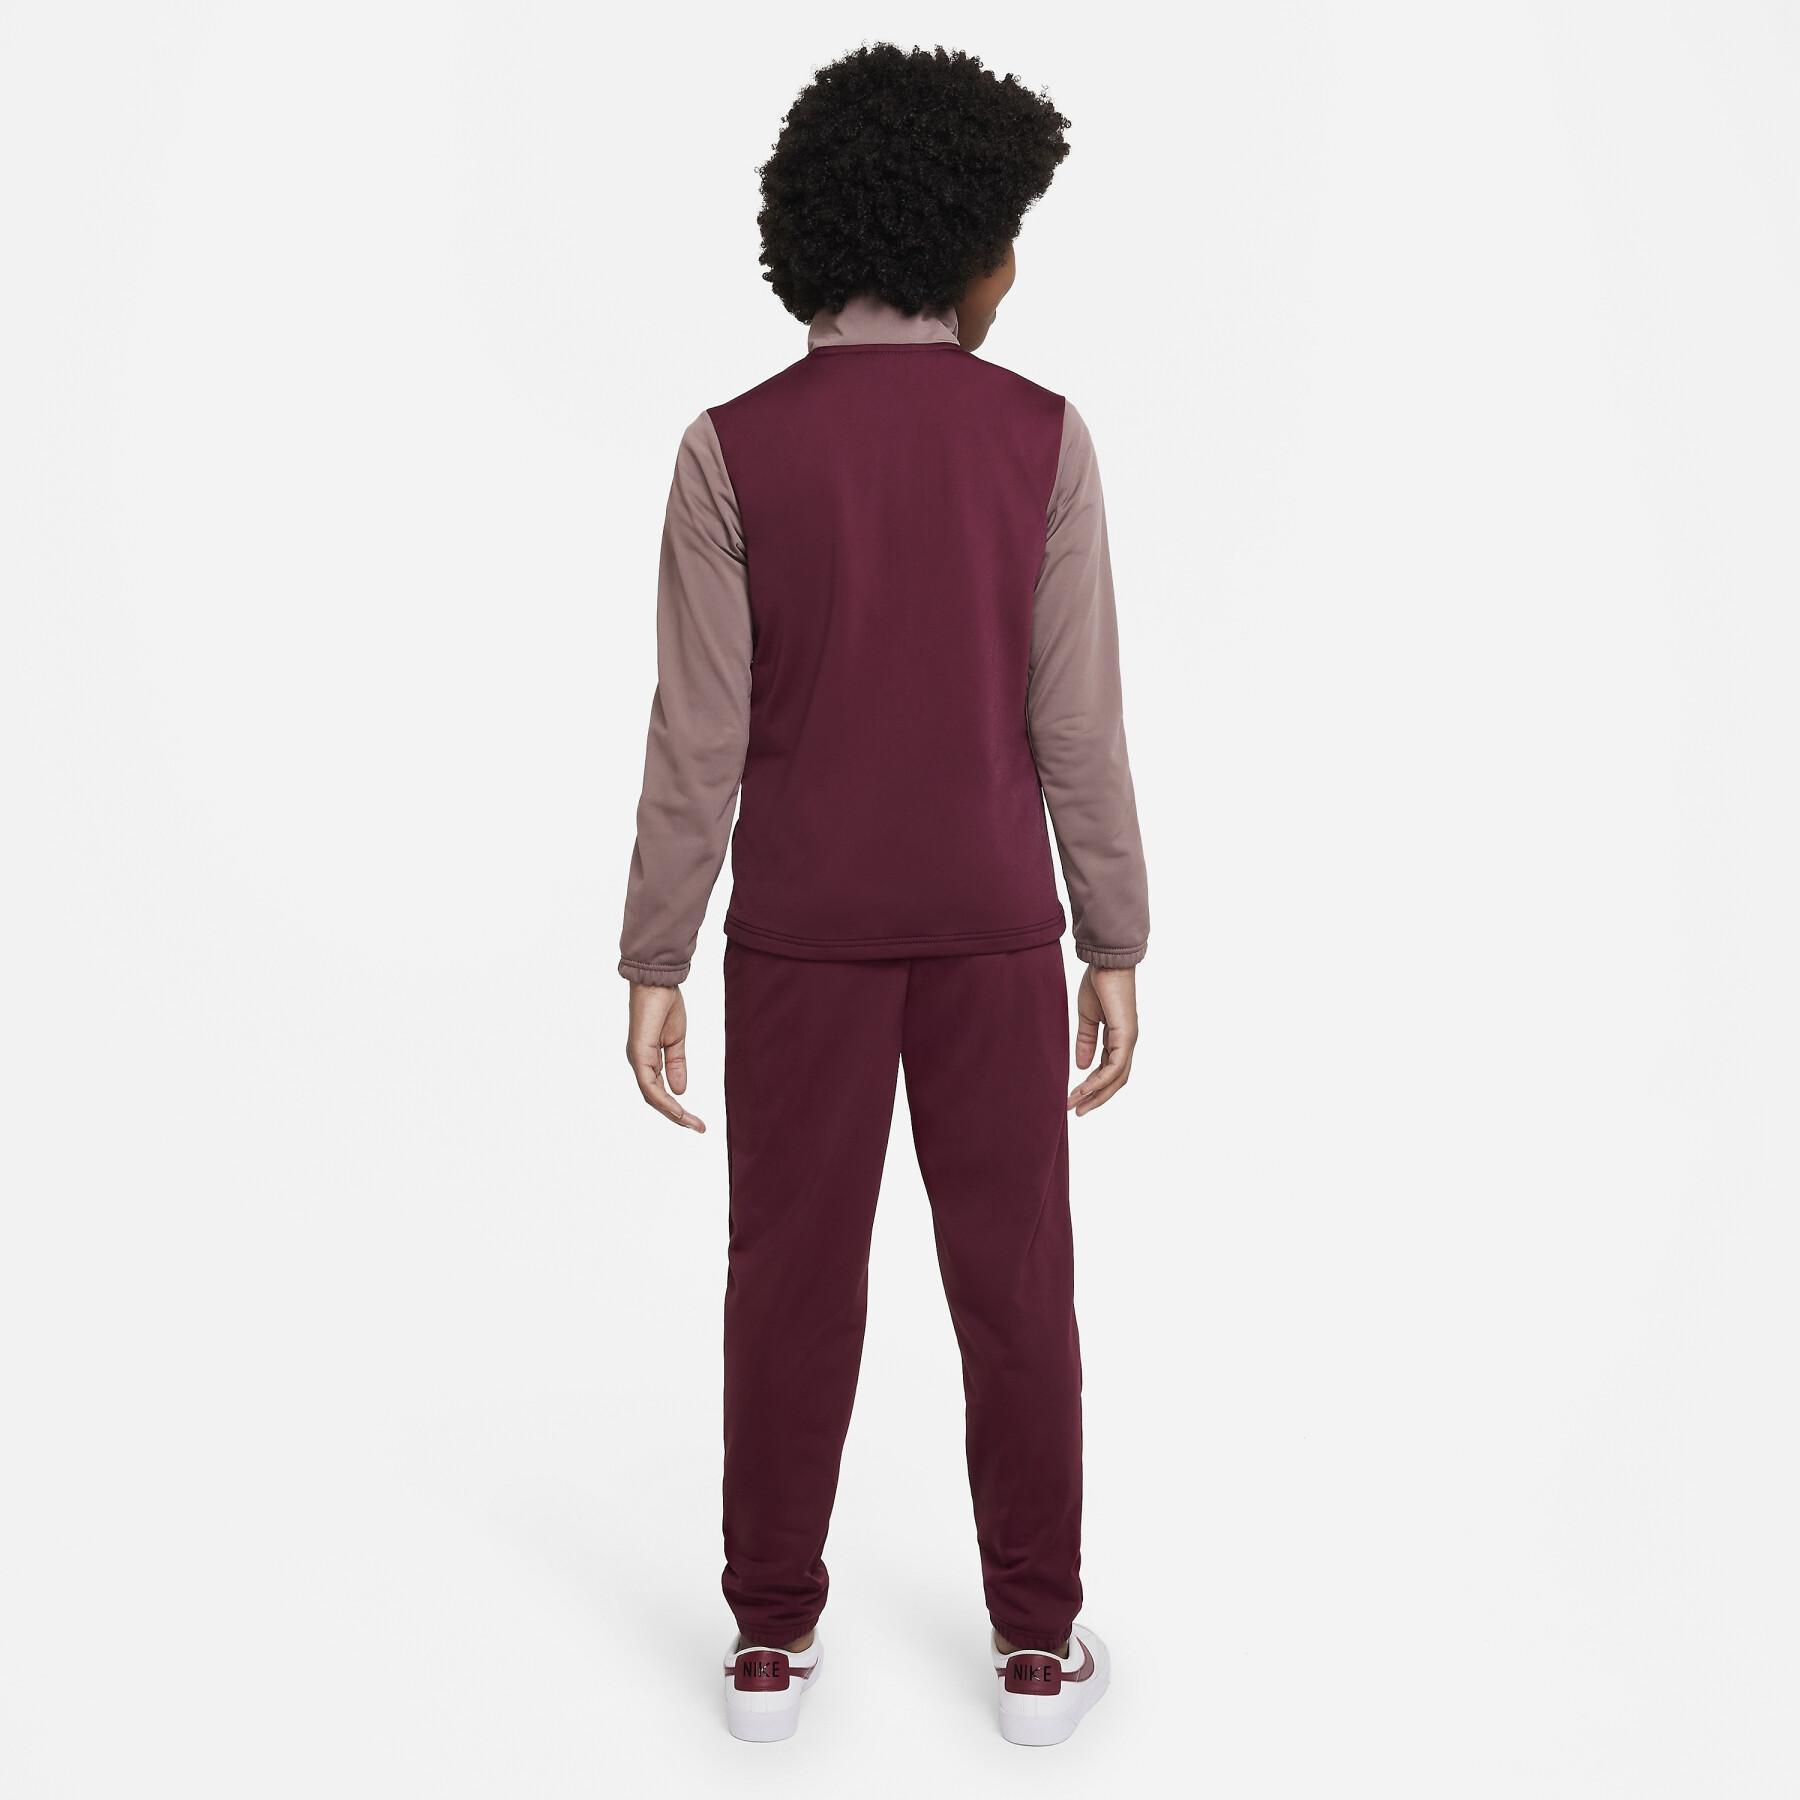 Trainingsanzug für Kinder Nike Futura